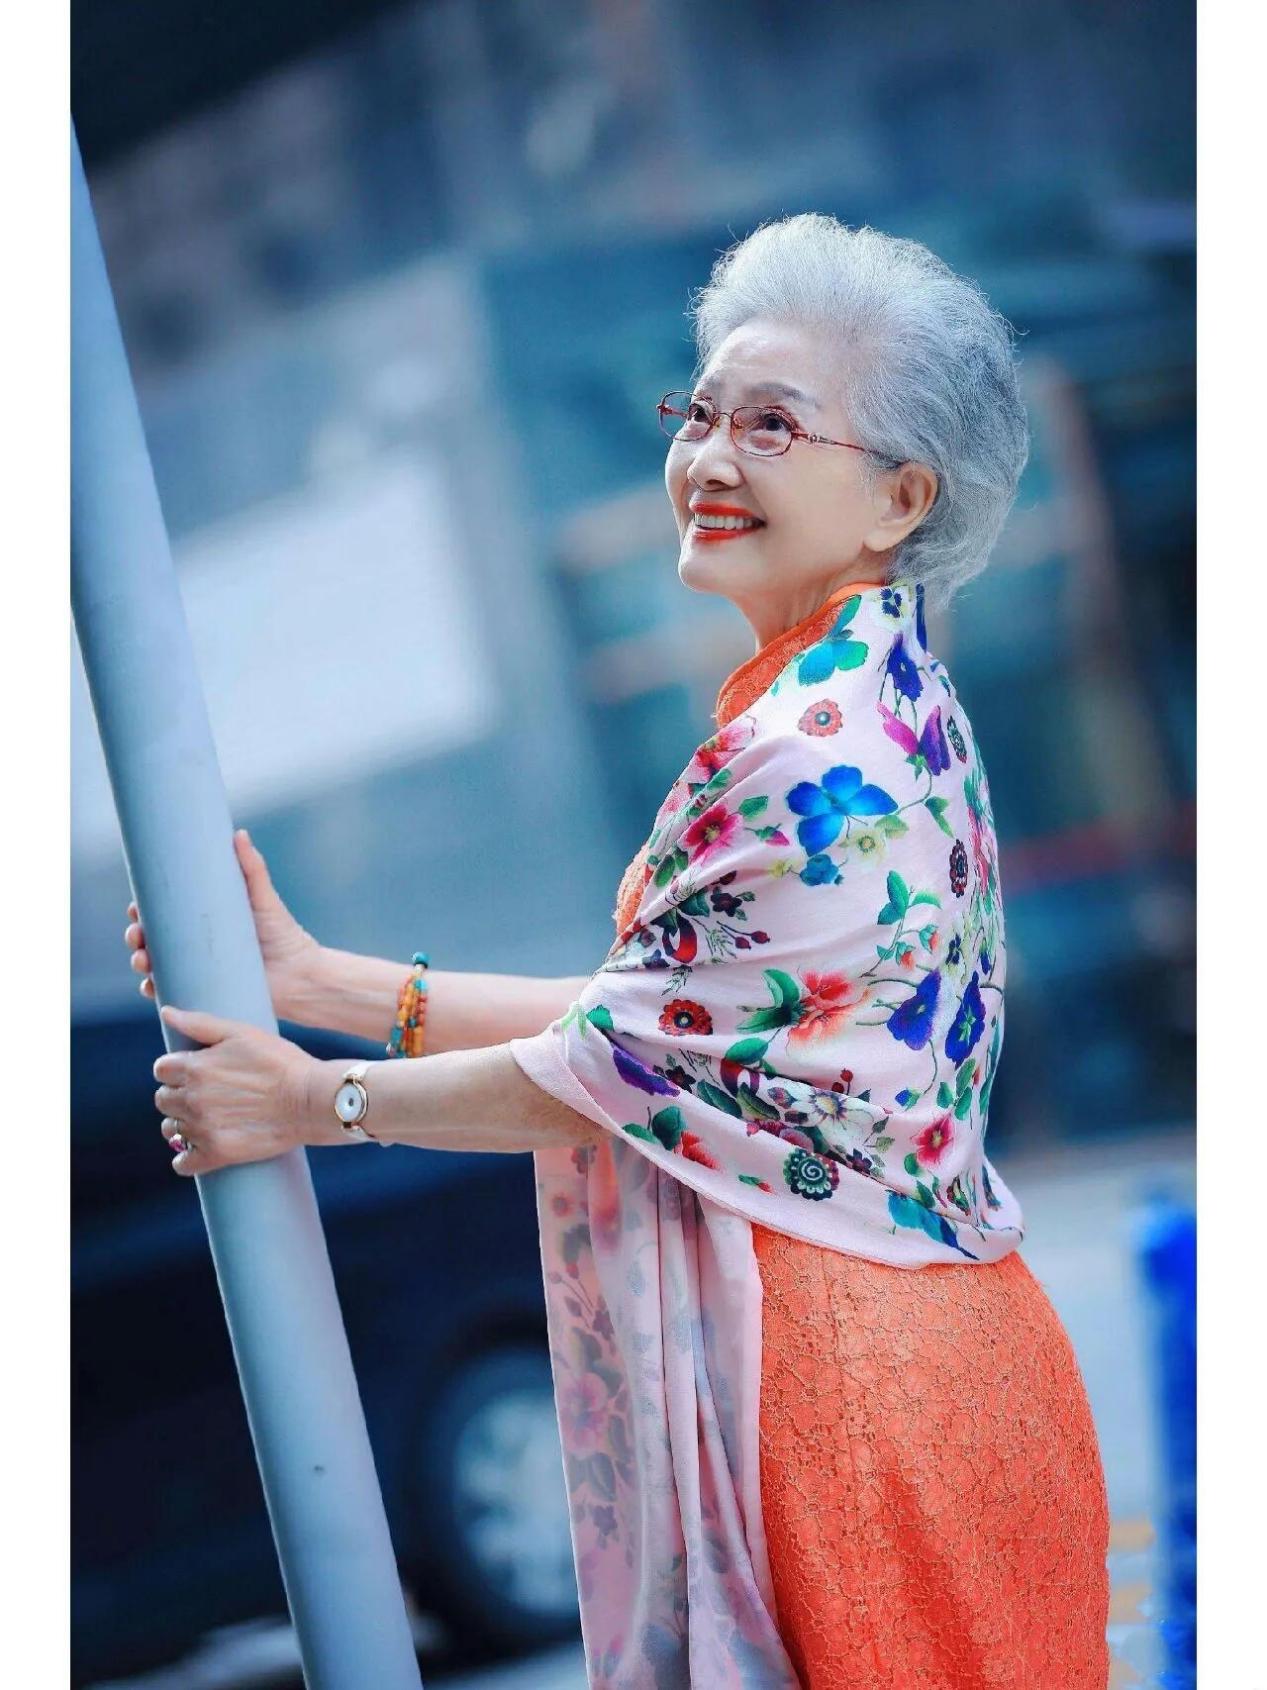 92岁中国奶奶凭实力美出圈,洋气又精致,时尚感不输年轻人